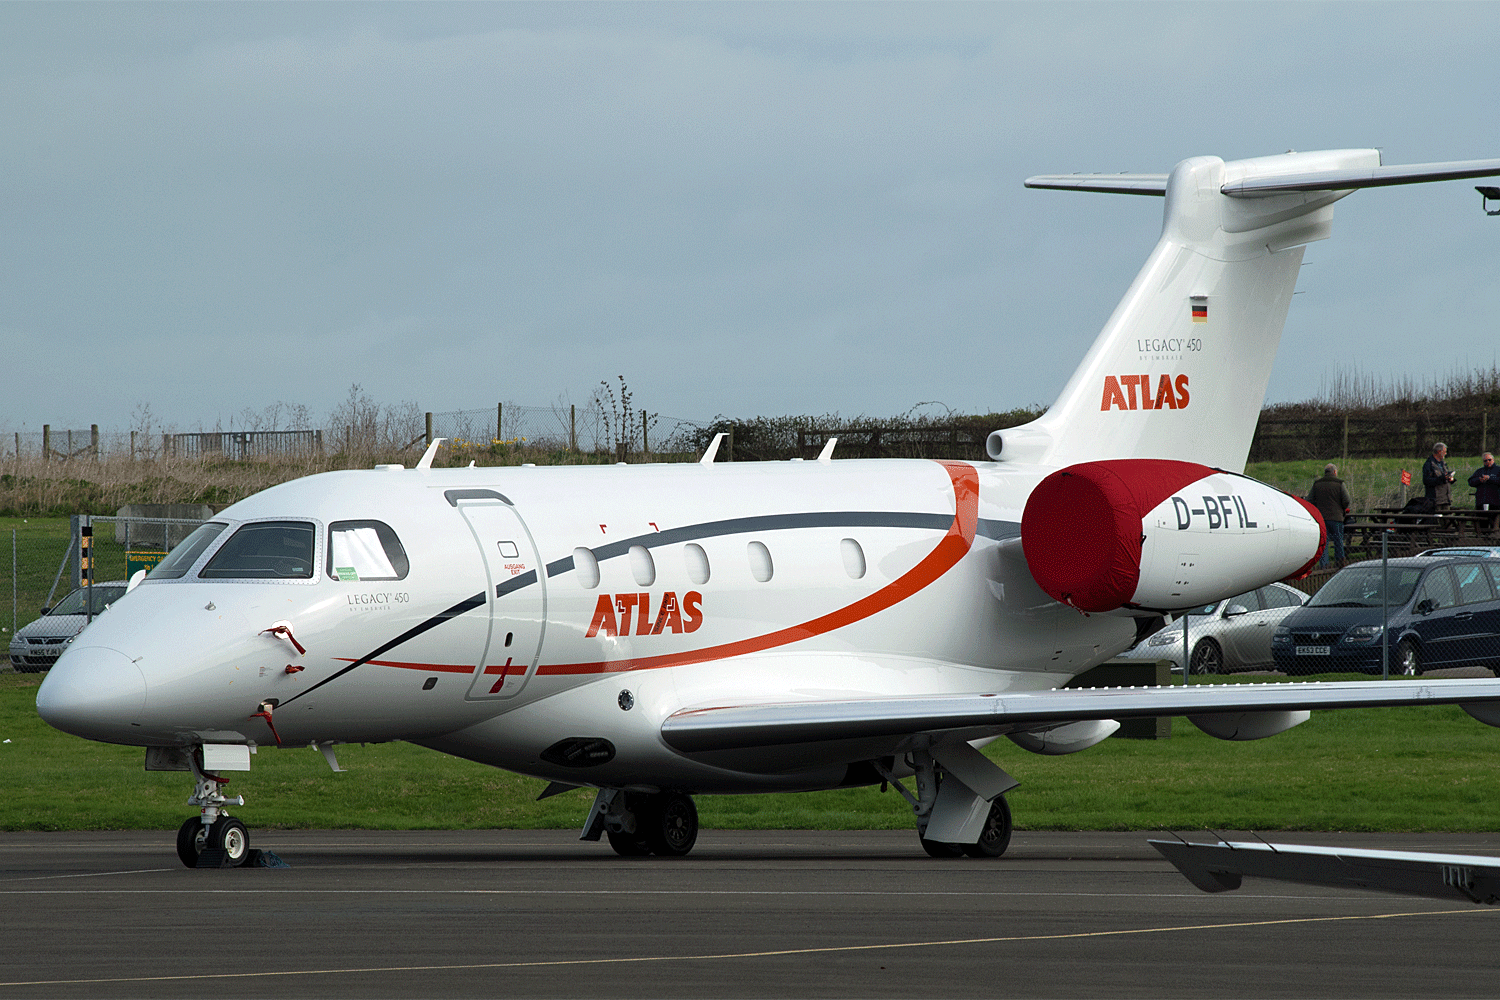 D-BFIL - EMB 545 - Atlas Air Service